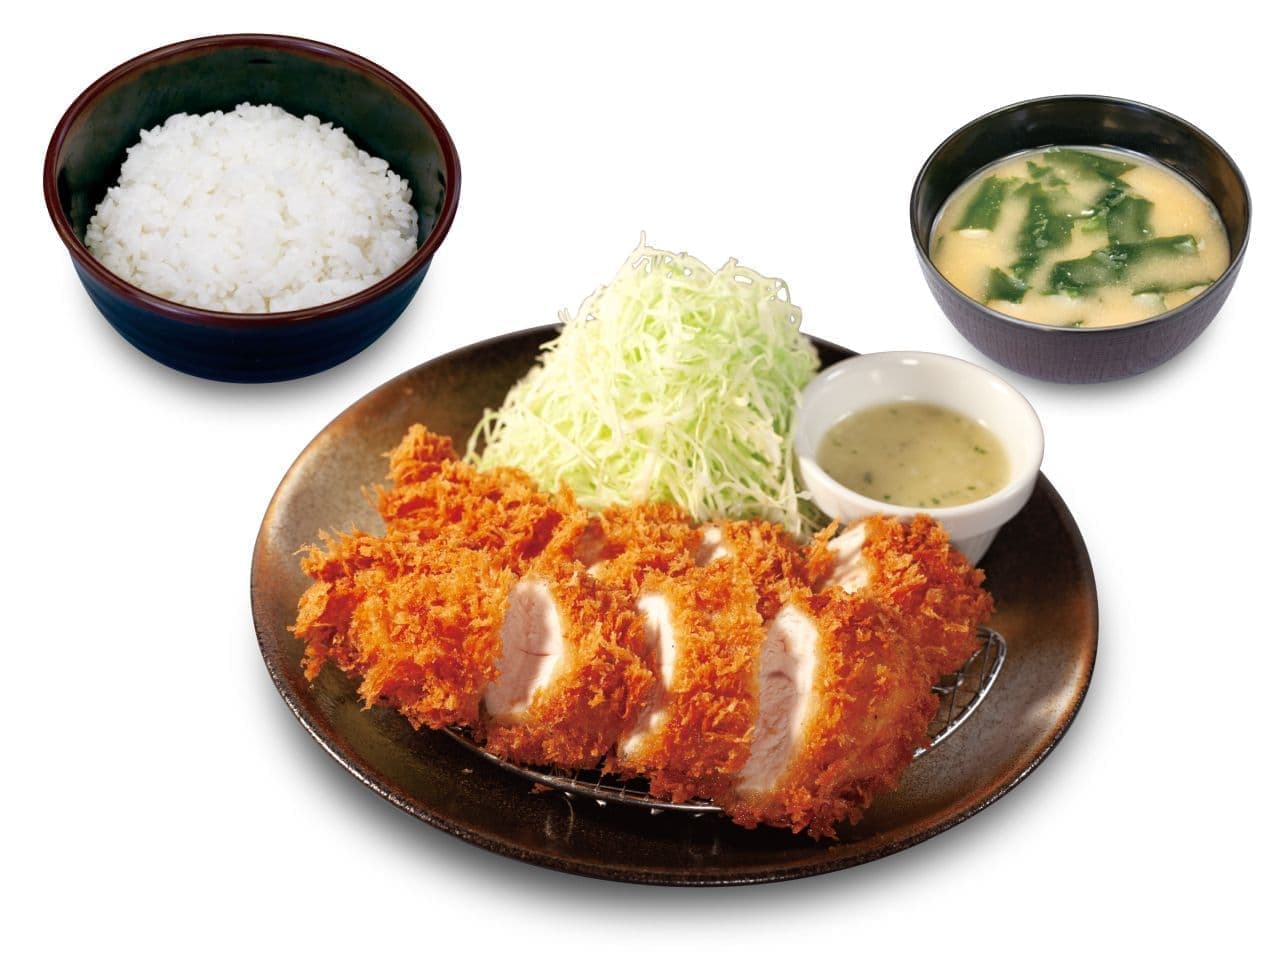 Matsunoya "Sasami Katsu Set Meal" new sauces "Garlic Butter" and "Grain Mustard Mayonnaise".